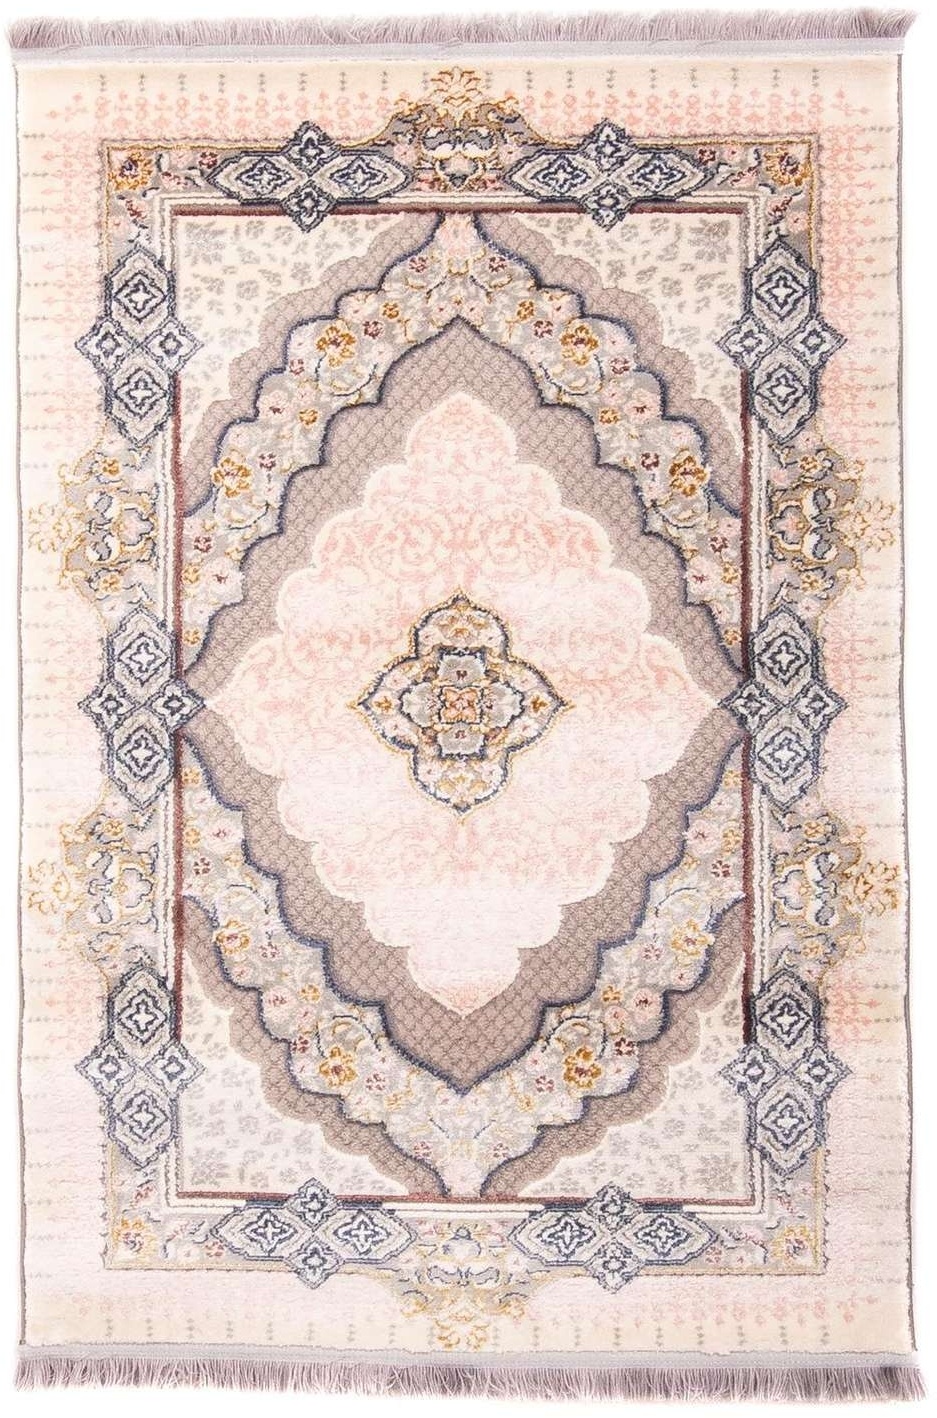 Morgenland Orientalischer Webteppich - Iman - beige - 400 x 300 cm - rechteckig